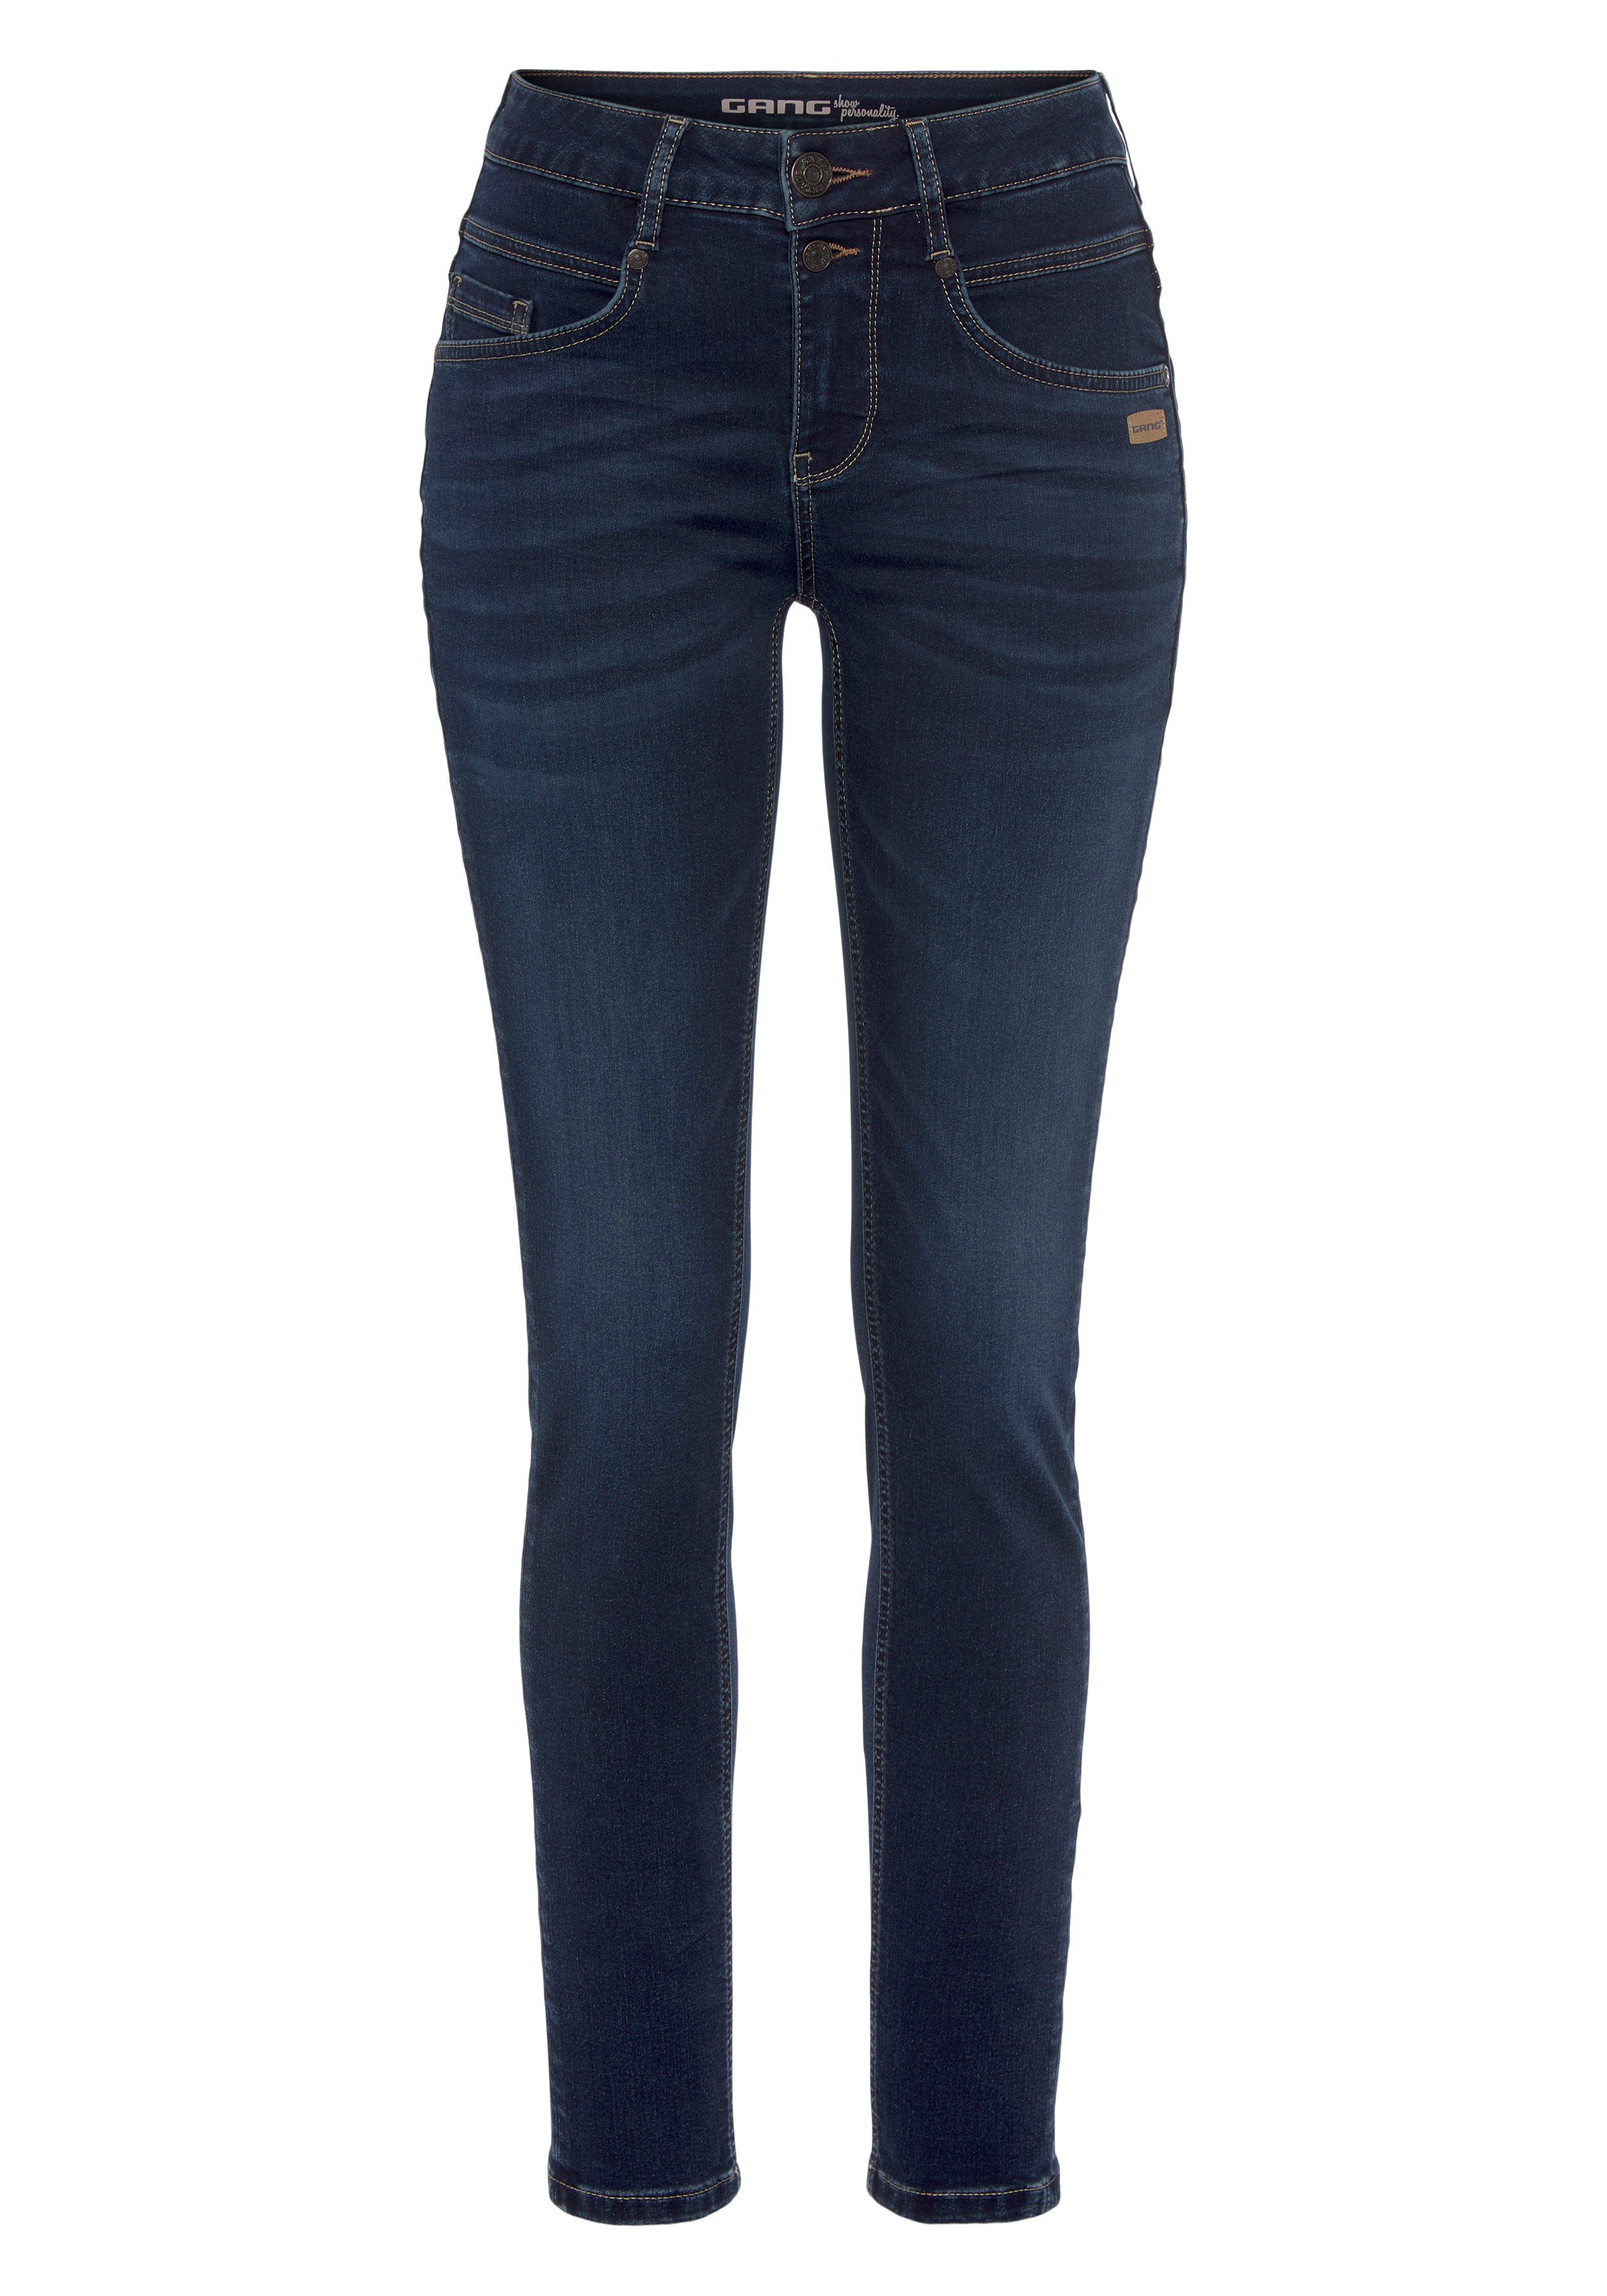 GANG Skinny-fit-Jeans 94MORA dark mit Passe deep vorne blue und 3-Knopf-Verschluss